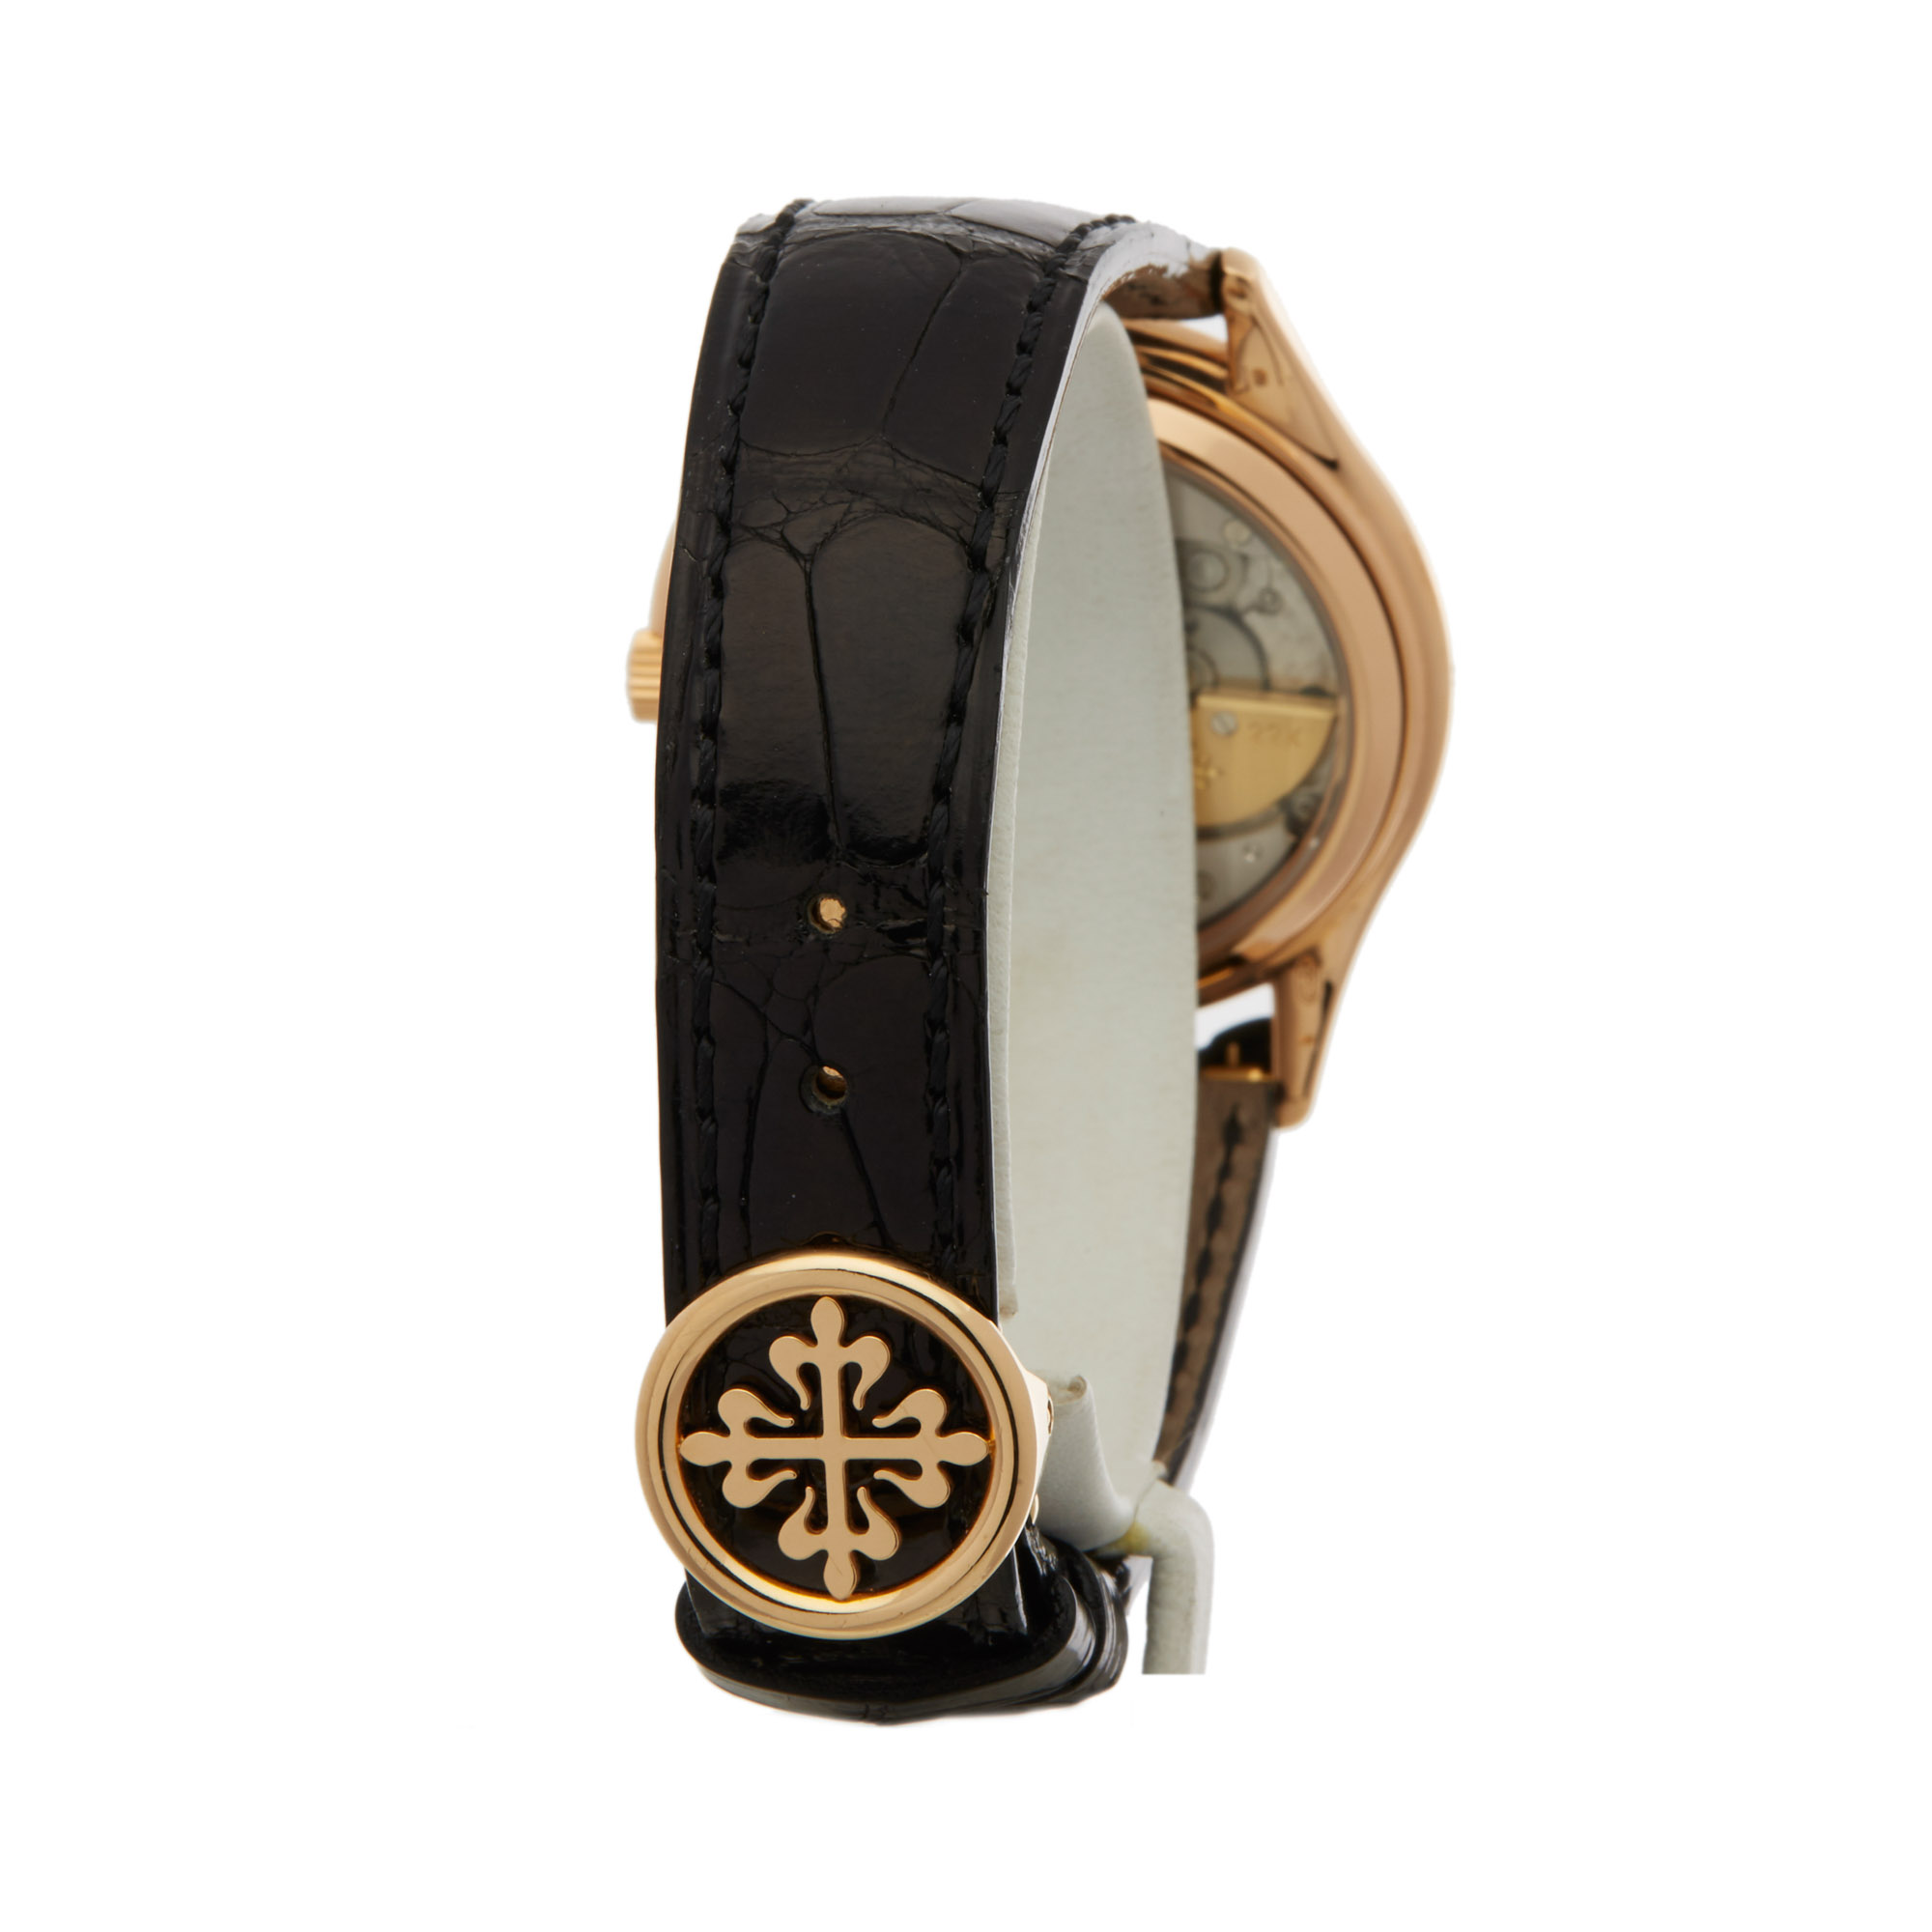 Patek Philippe Perpetual Calendar  3940 Men Rose Gold Porcelain Dial Watch - Image 4 of 7